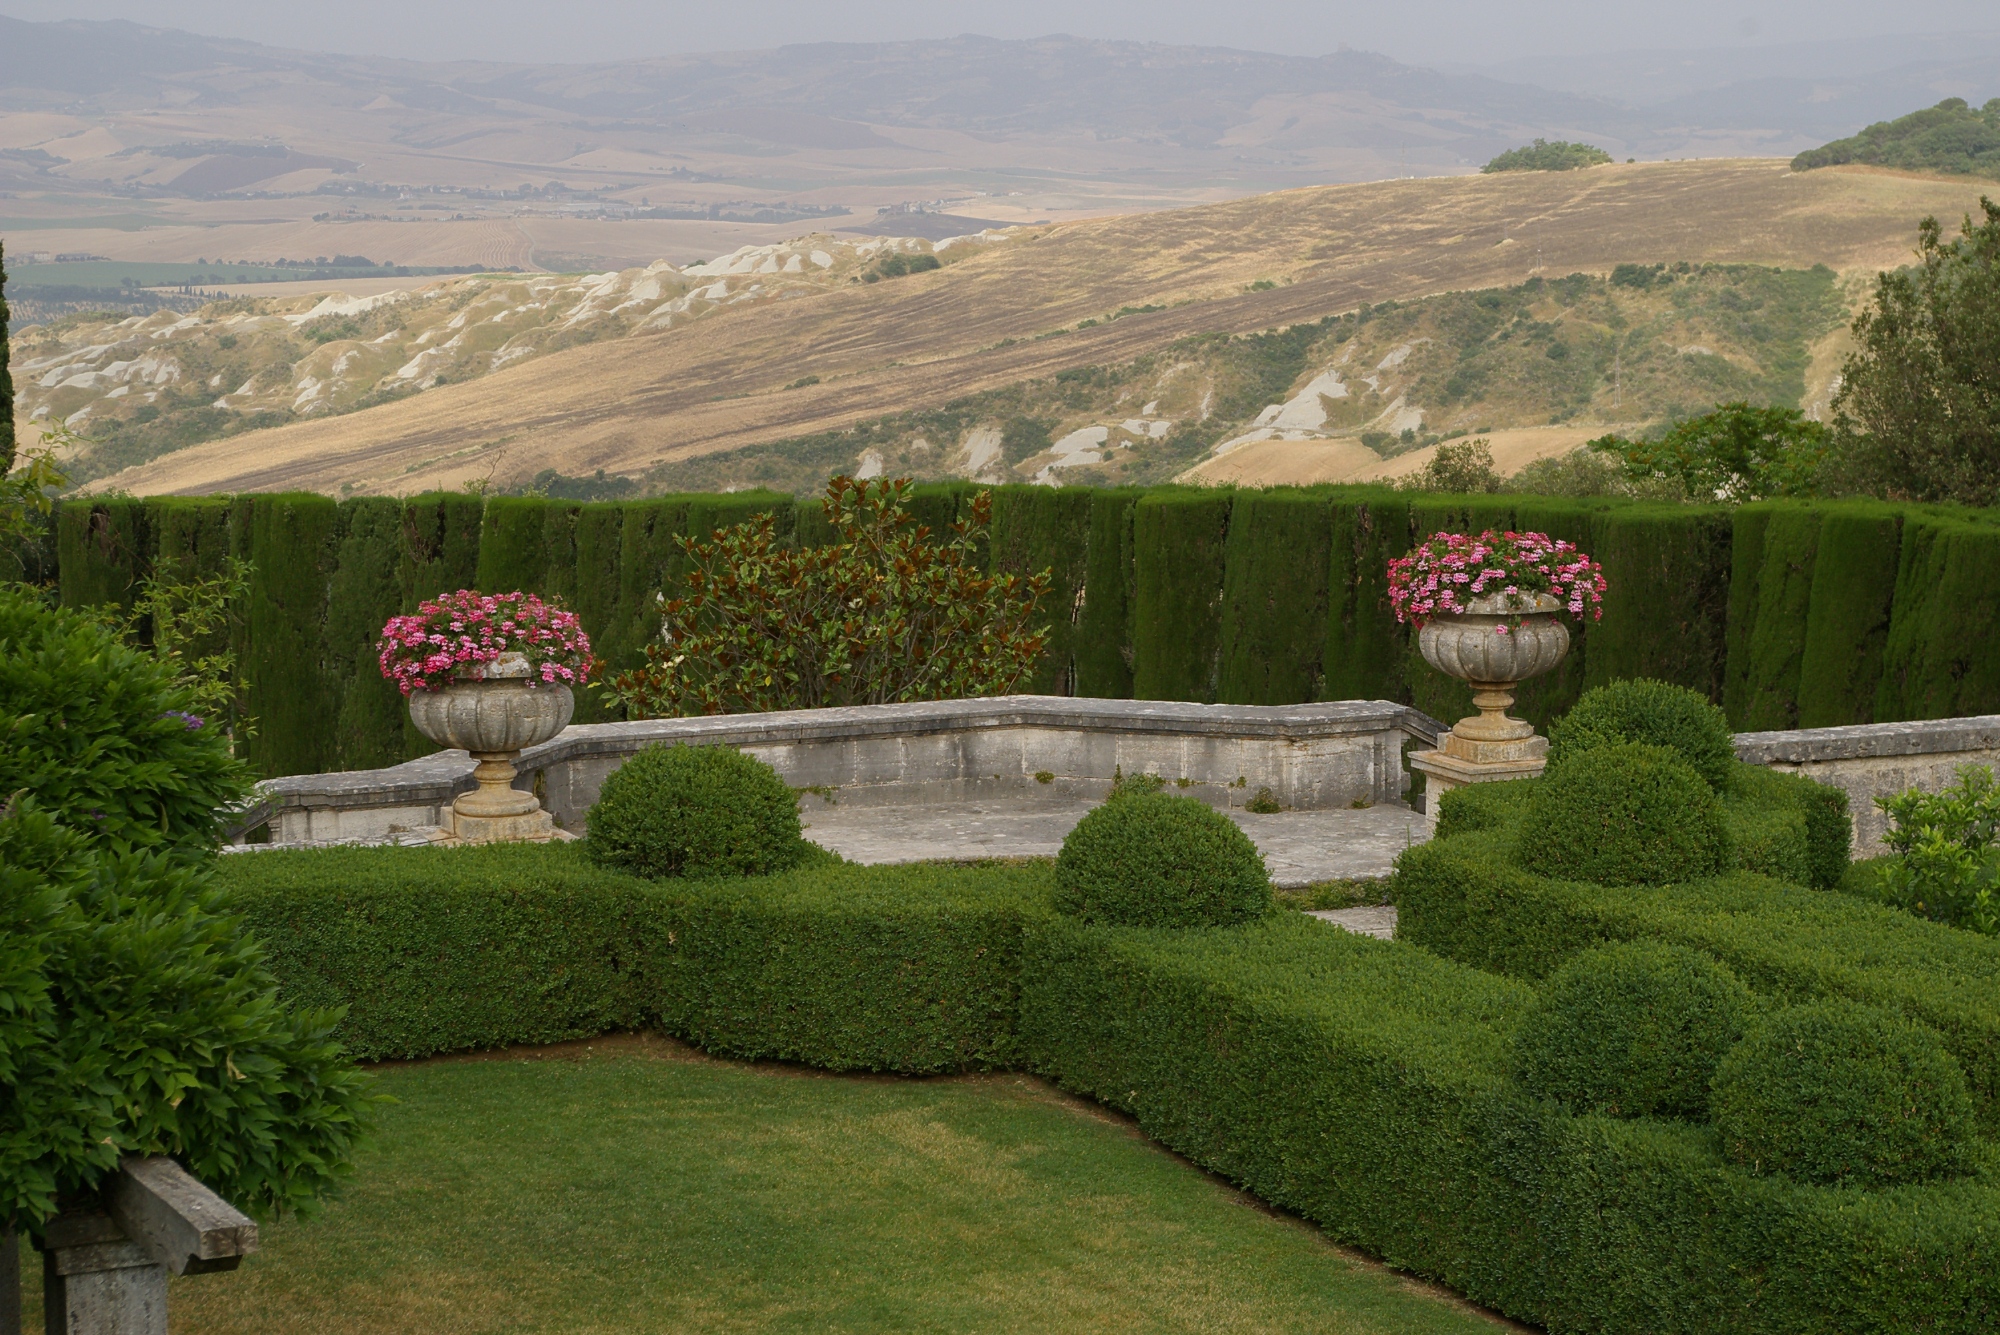 The gardens at Villa La Foce